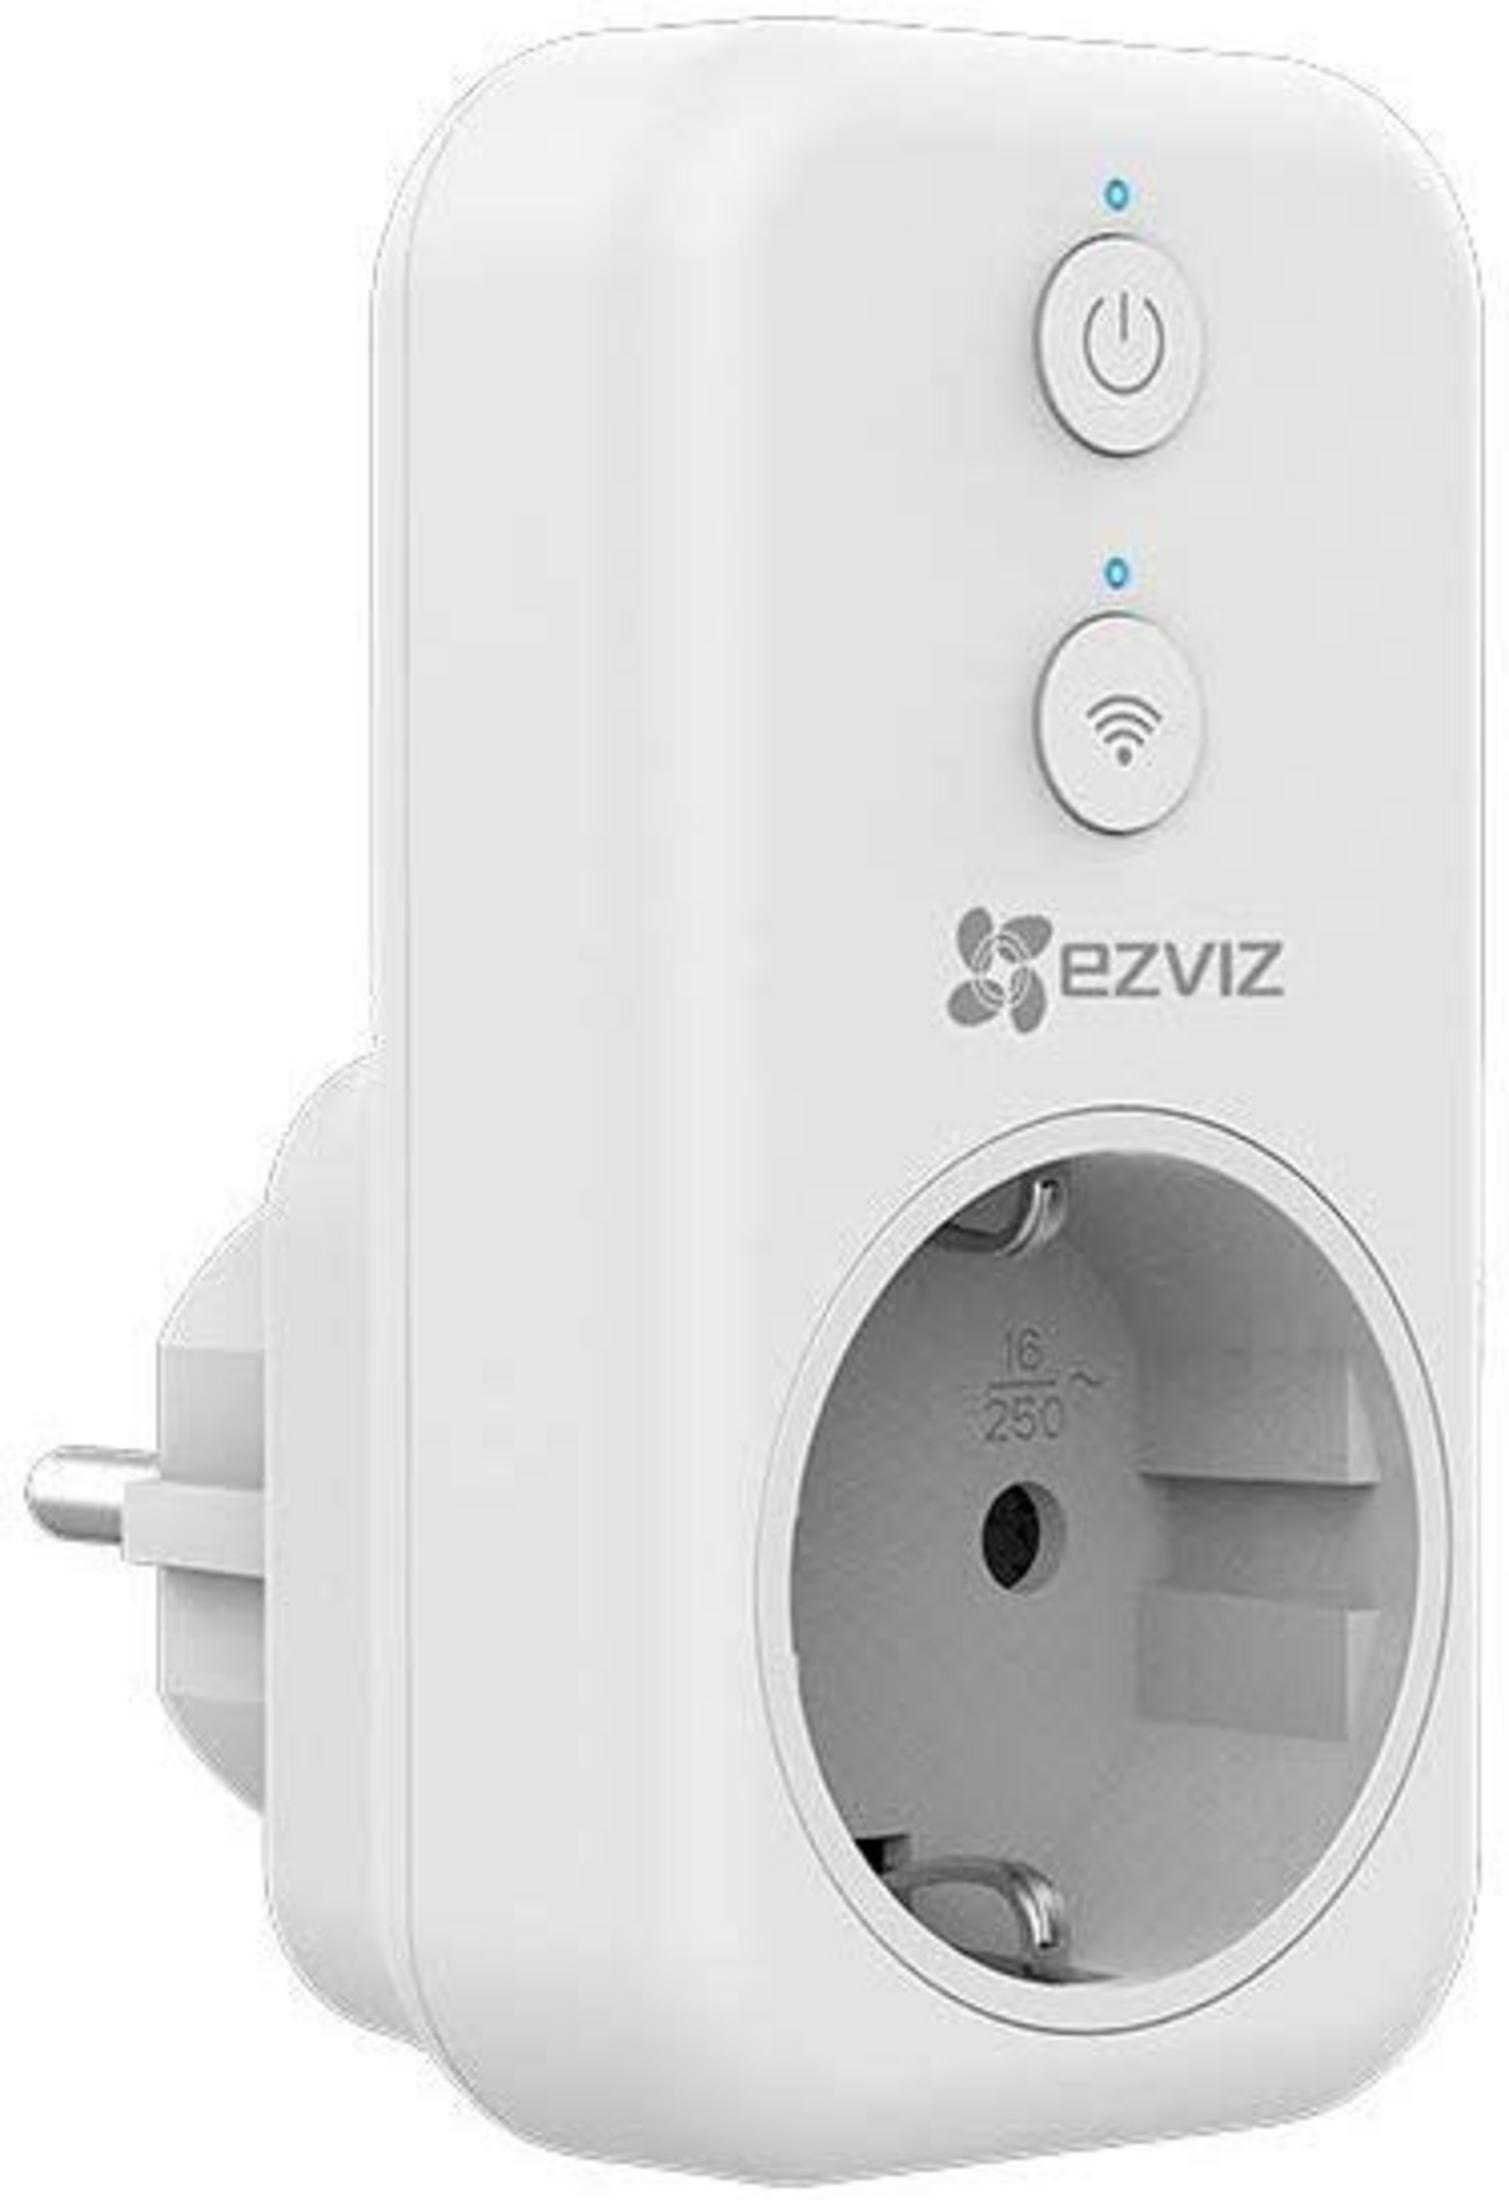 EZVIZ T31 BASIC (WHITE) Plug Smart